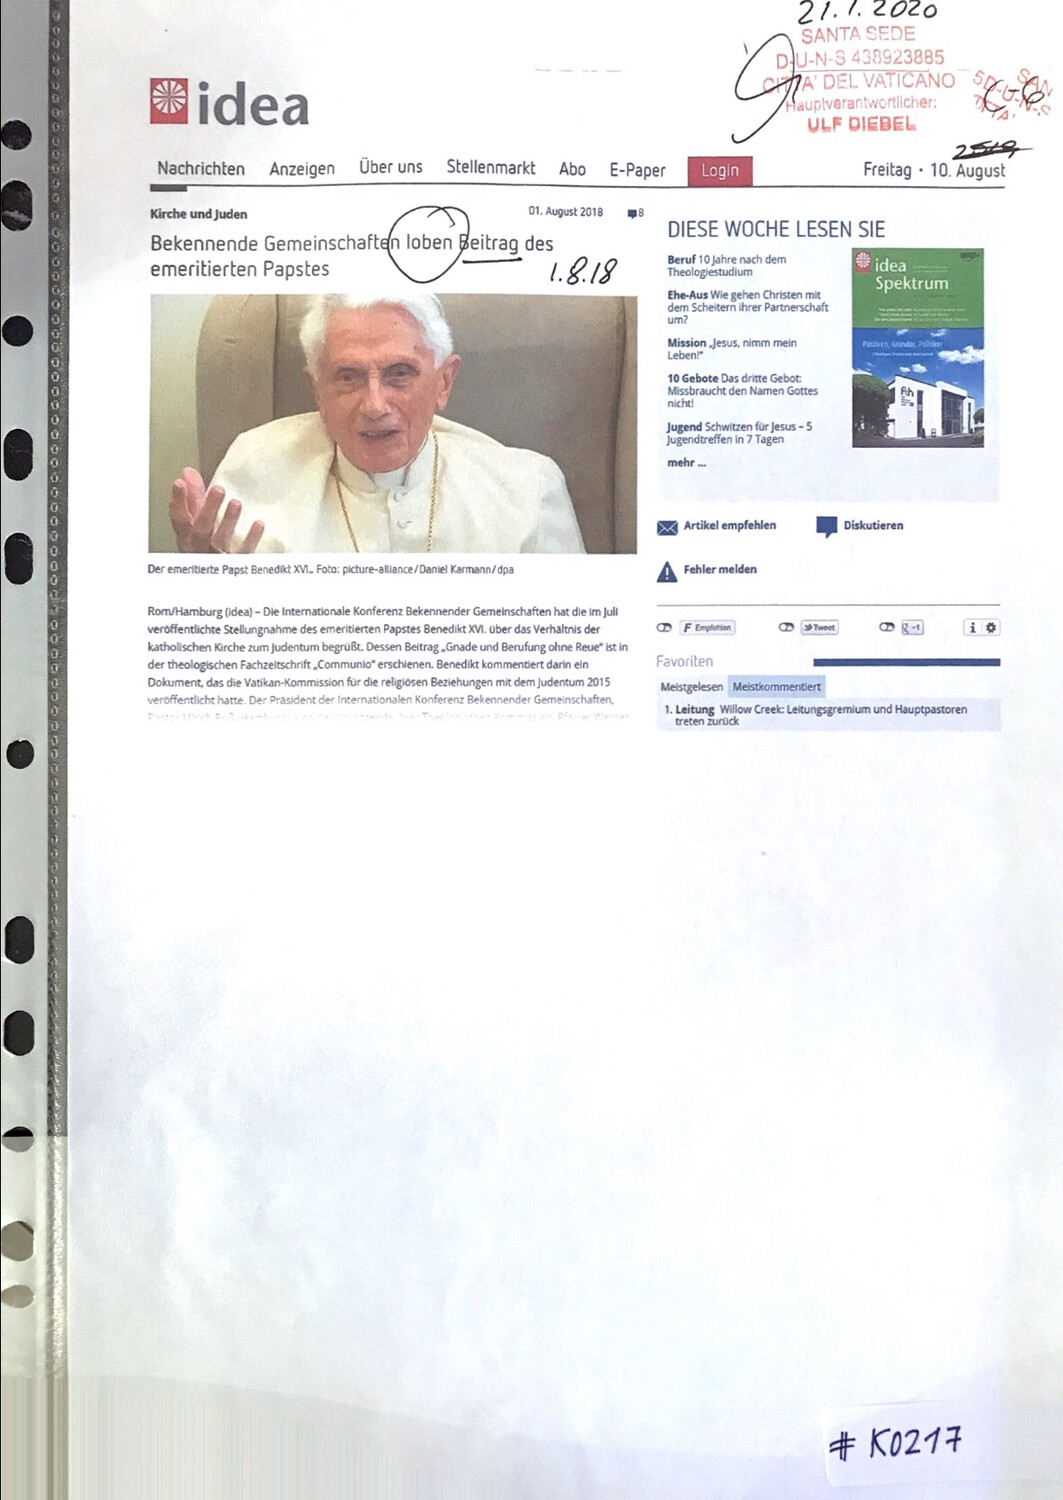 #K0217 l idea - Kirche und Juden l Bekennende Gemeinschaften loben Beitrag des emeritierten Papstes